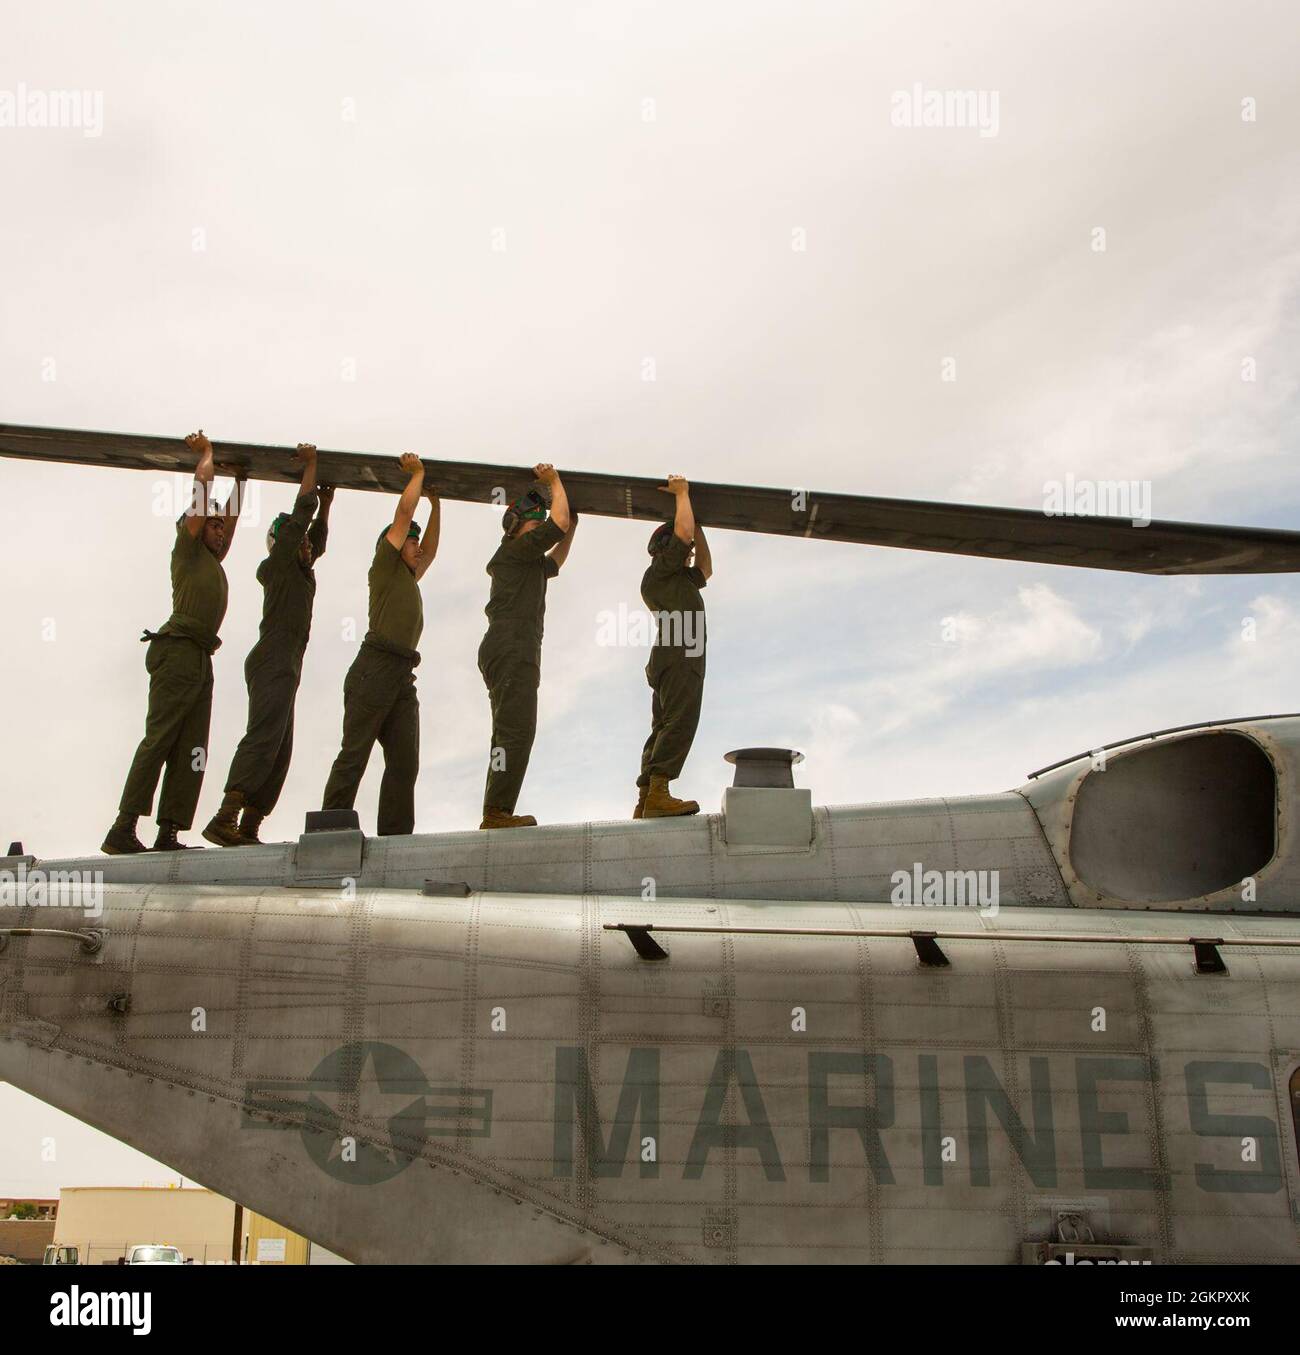 U.S. Marine Corps CH-53E Flugzeugbetreuer, die an Marine Heavy Helicopter Squadron (HMH) 361, Marine Aircraft Group 16, 3rd Marine Aircraft Wing, angeschlossen sind, führen Routinewartung auf der Naval Air Station Fallon, Nevada, 16. Juni 2021 durch. Wartungspersonal ist für die Einsatzbereitschaft im Jahr 24/7 von entscheidender Bedeutung, da sie die Zuverlässigkeit, Sicherheit und Letalität des Marine Corps Aviation mit ihrer Liebe zum Detail und ihren zeitnahen Anfragen bewahren und verbessern. Stockfoto